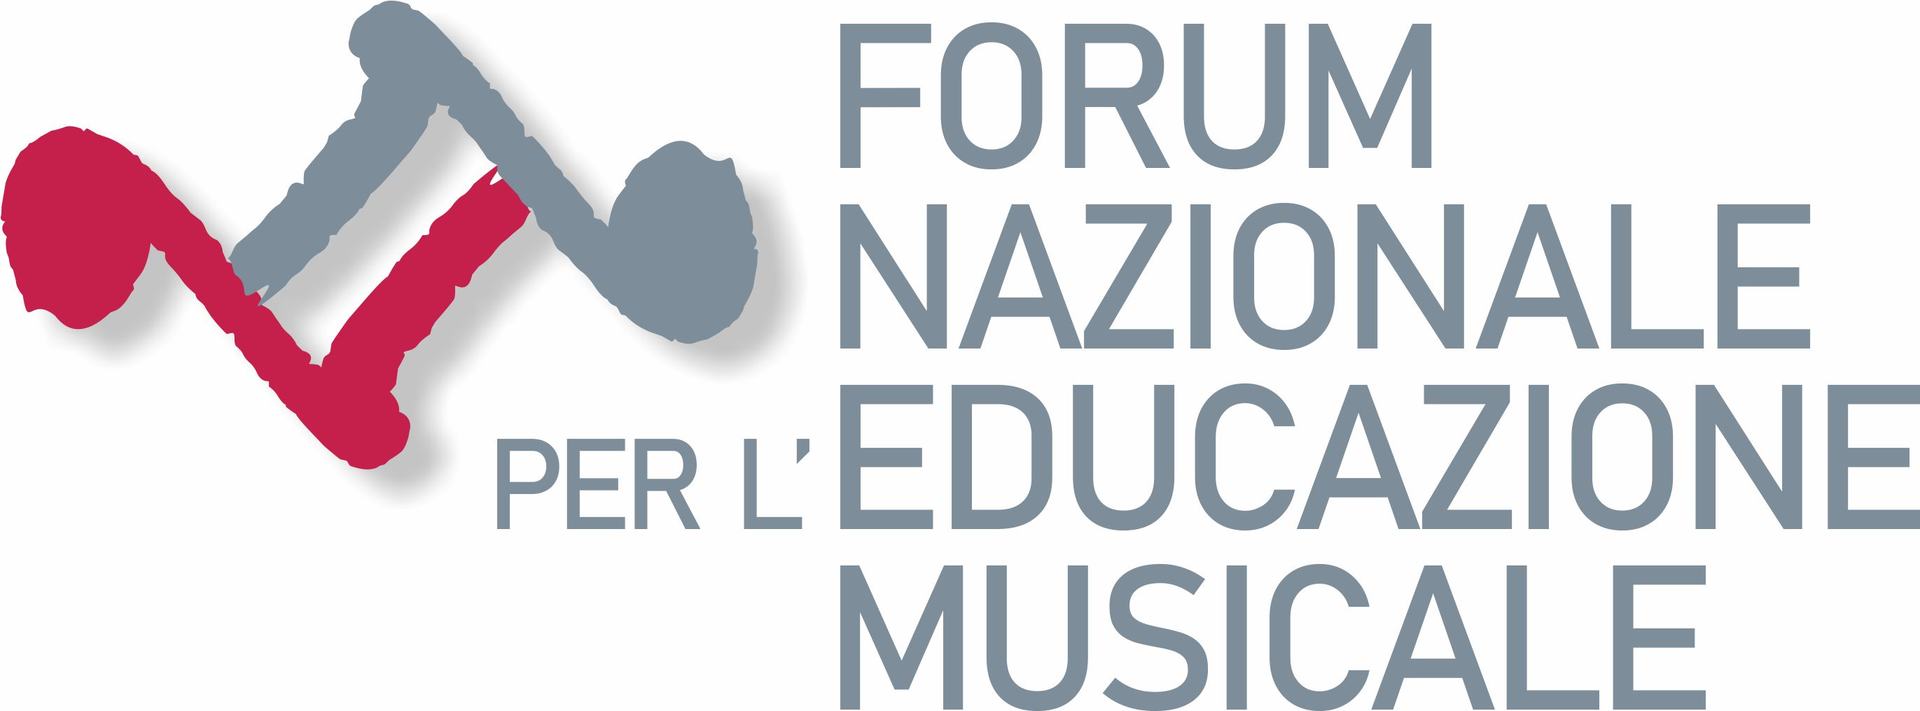 Forumeducazionemusicale